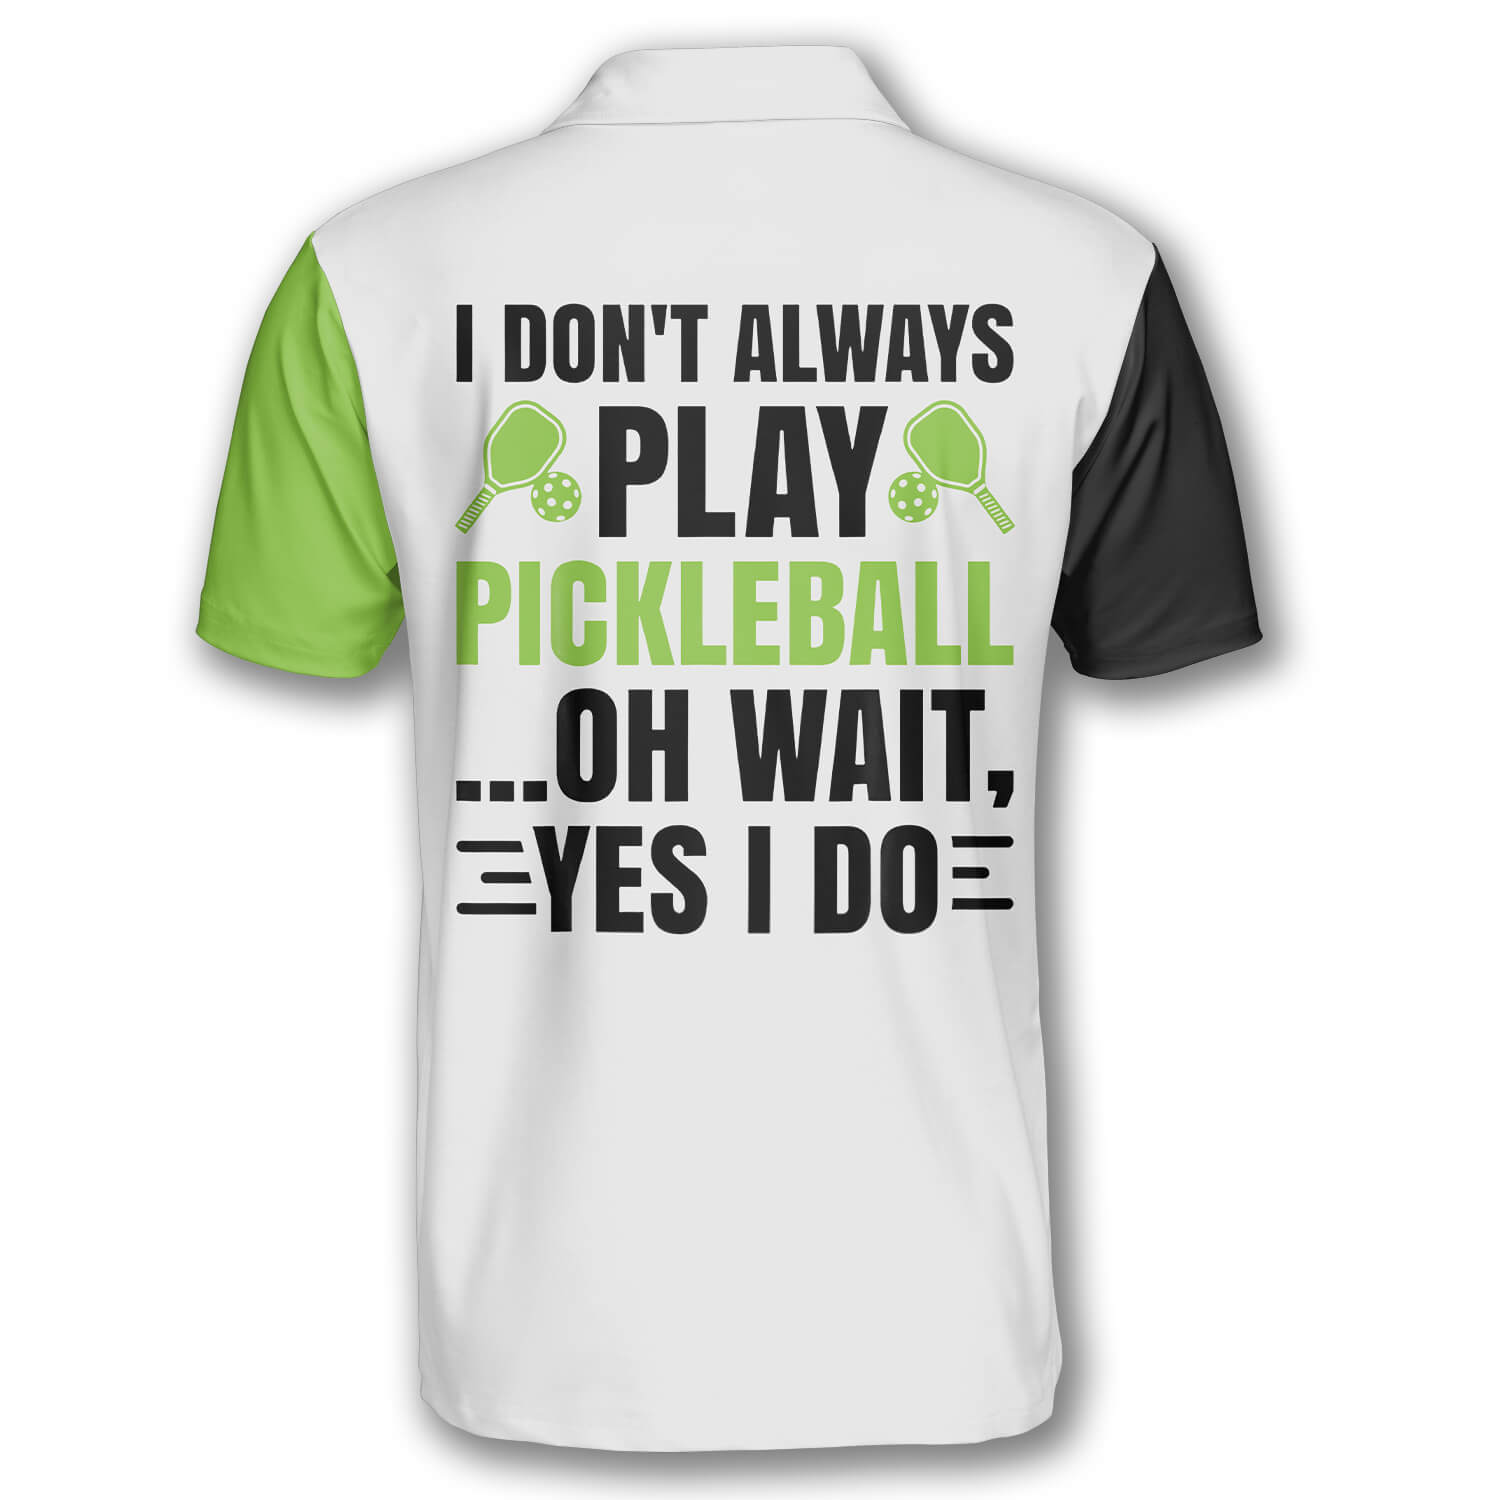 I Don’t Always Play Pickleball Custom Pickleball Shirts for Men